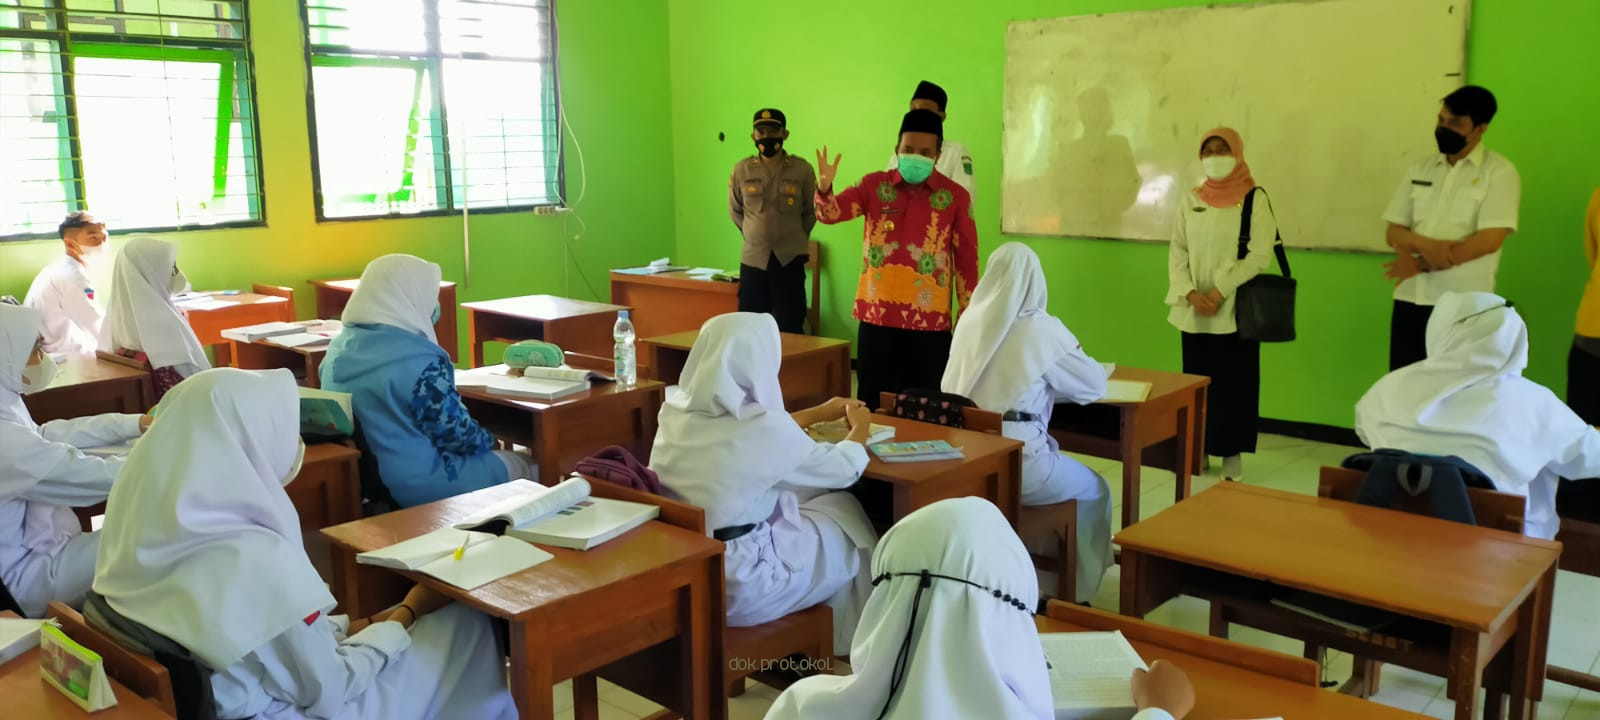 Sidak PTM Terbatas, Wakil Bupati Pasuruan, Gus Mujib Imron Tegur Sekolah Yang Masukkan Siswanya 100% Kapasitas Kelas